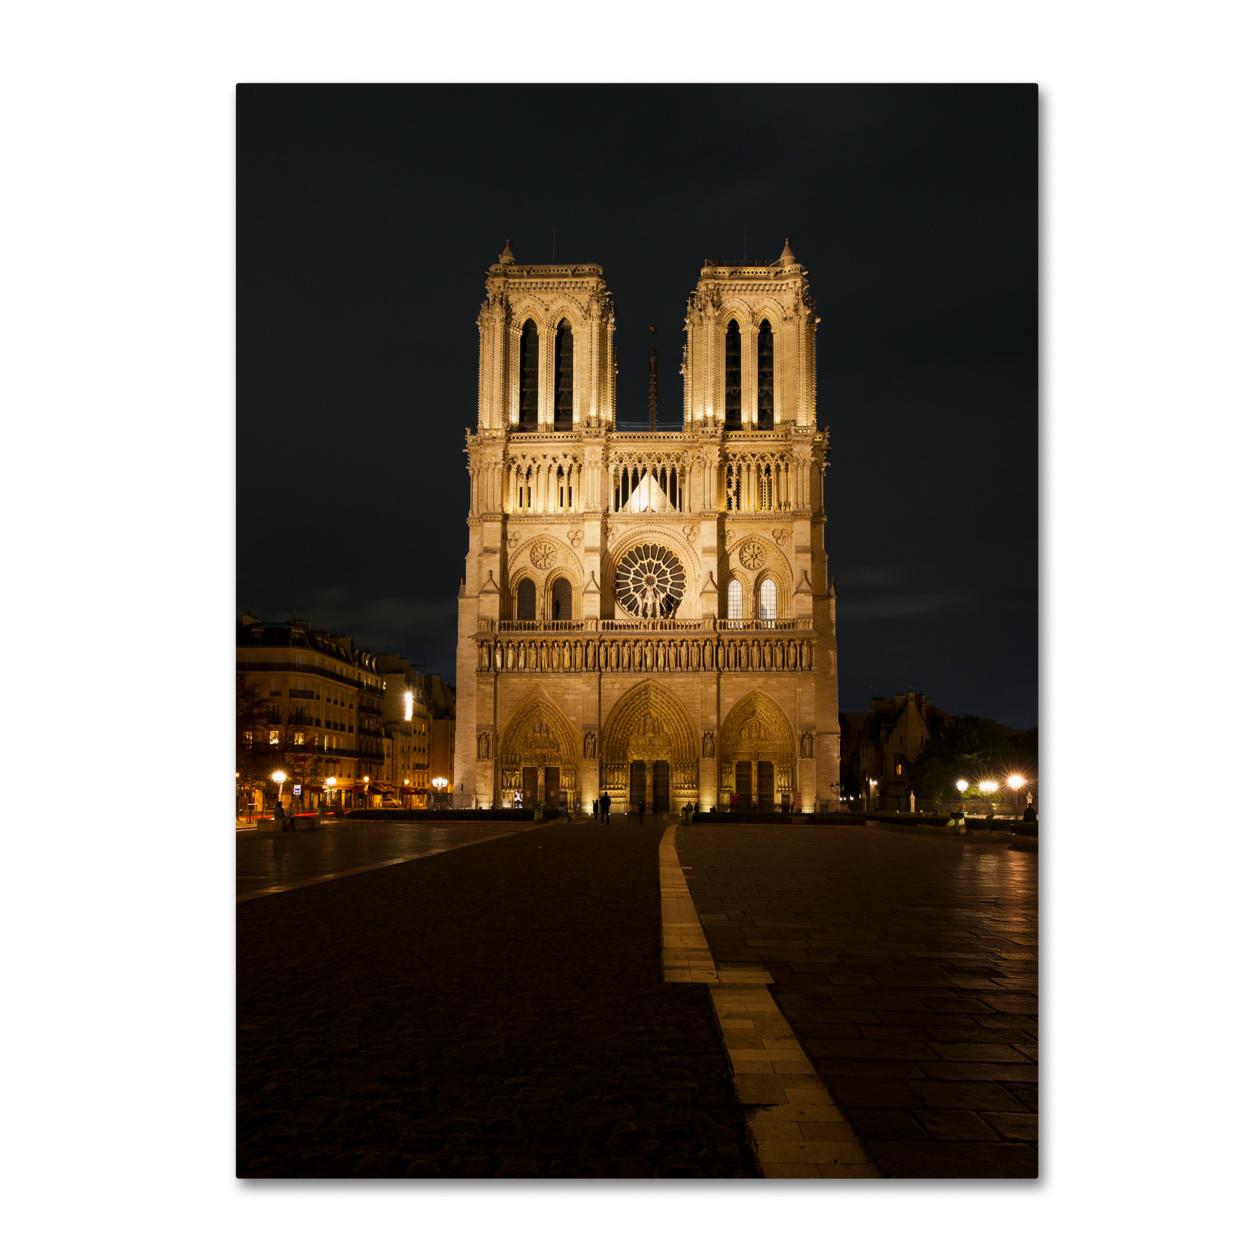 Michael Blanchette Photography 'Notre-Dame De Paris' Canvas Wall Art 35 X 47 Inches